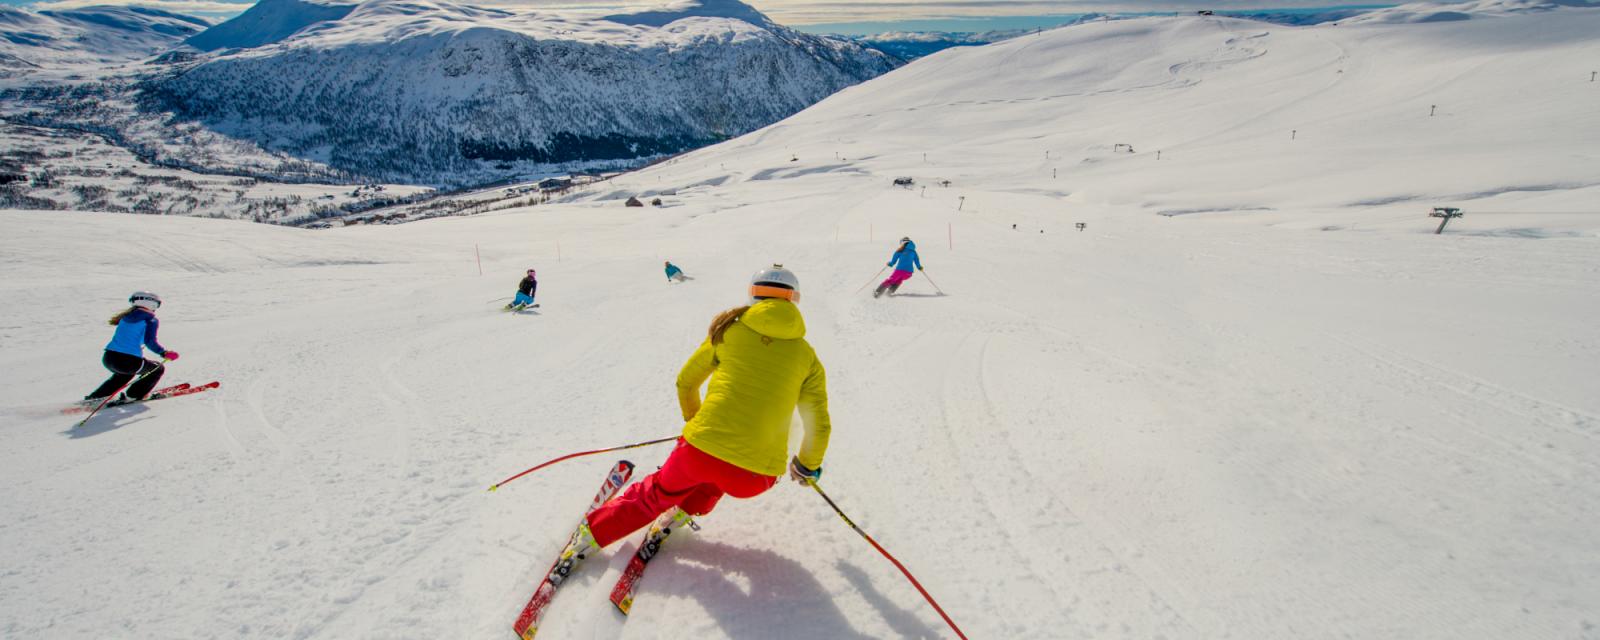 Noorse wintersport: veel meer dan skiën alleen! 